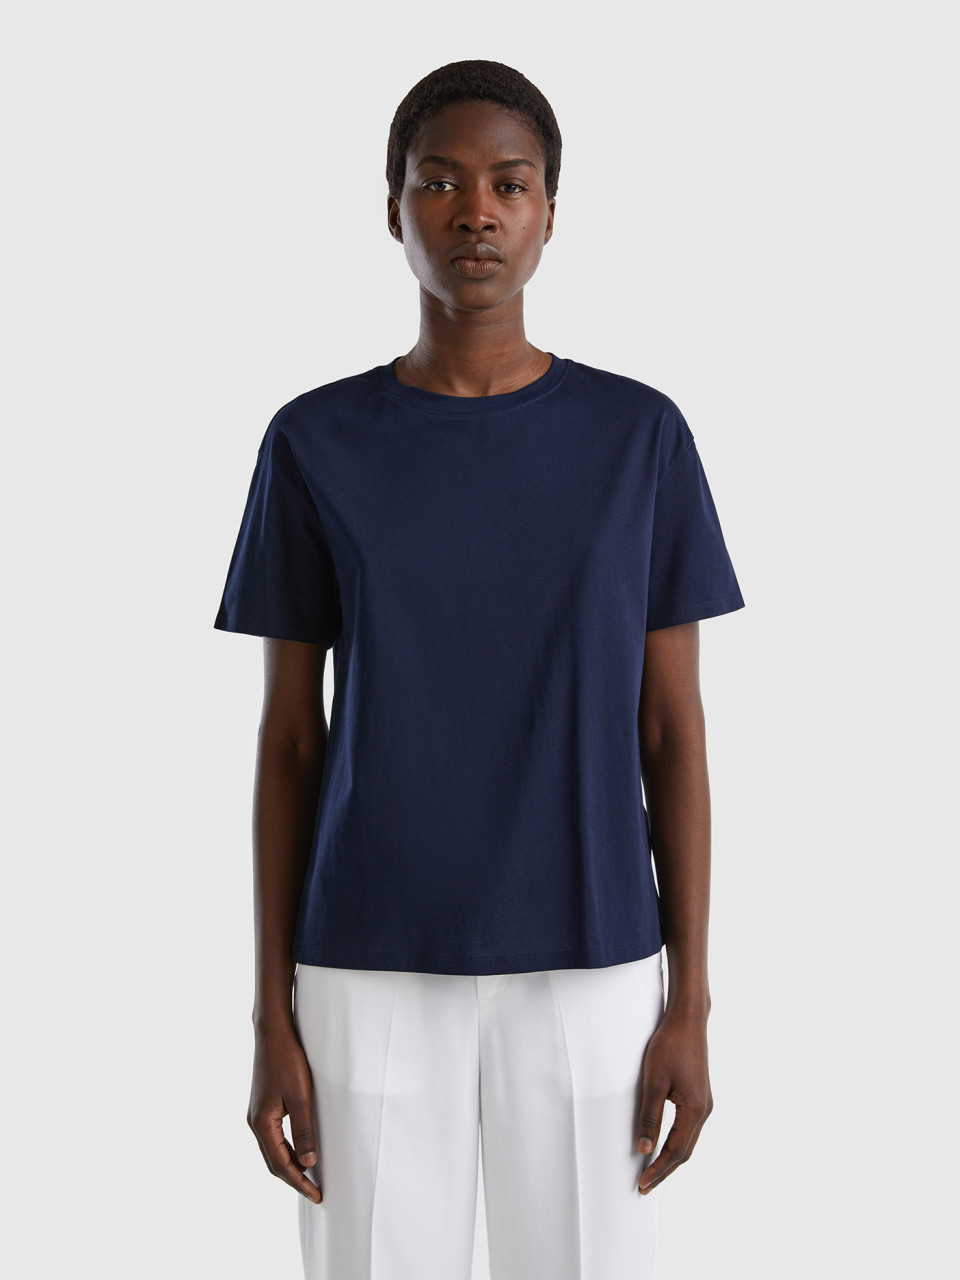 Benetton, Short Sleeve 100% Cotton T-shirt, Dark Blue, Women